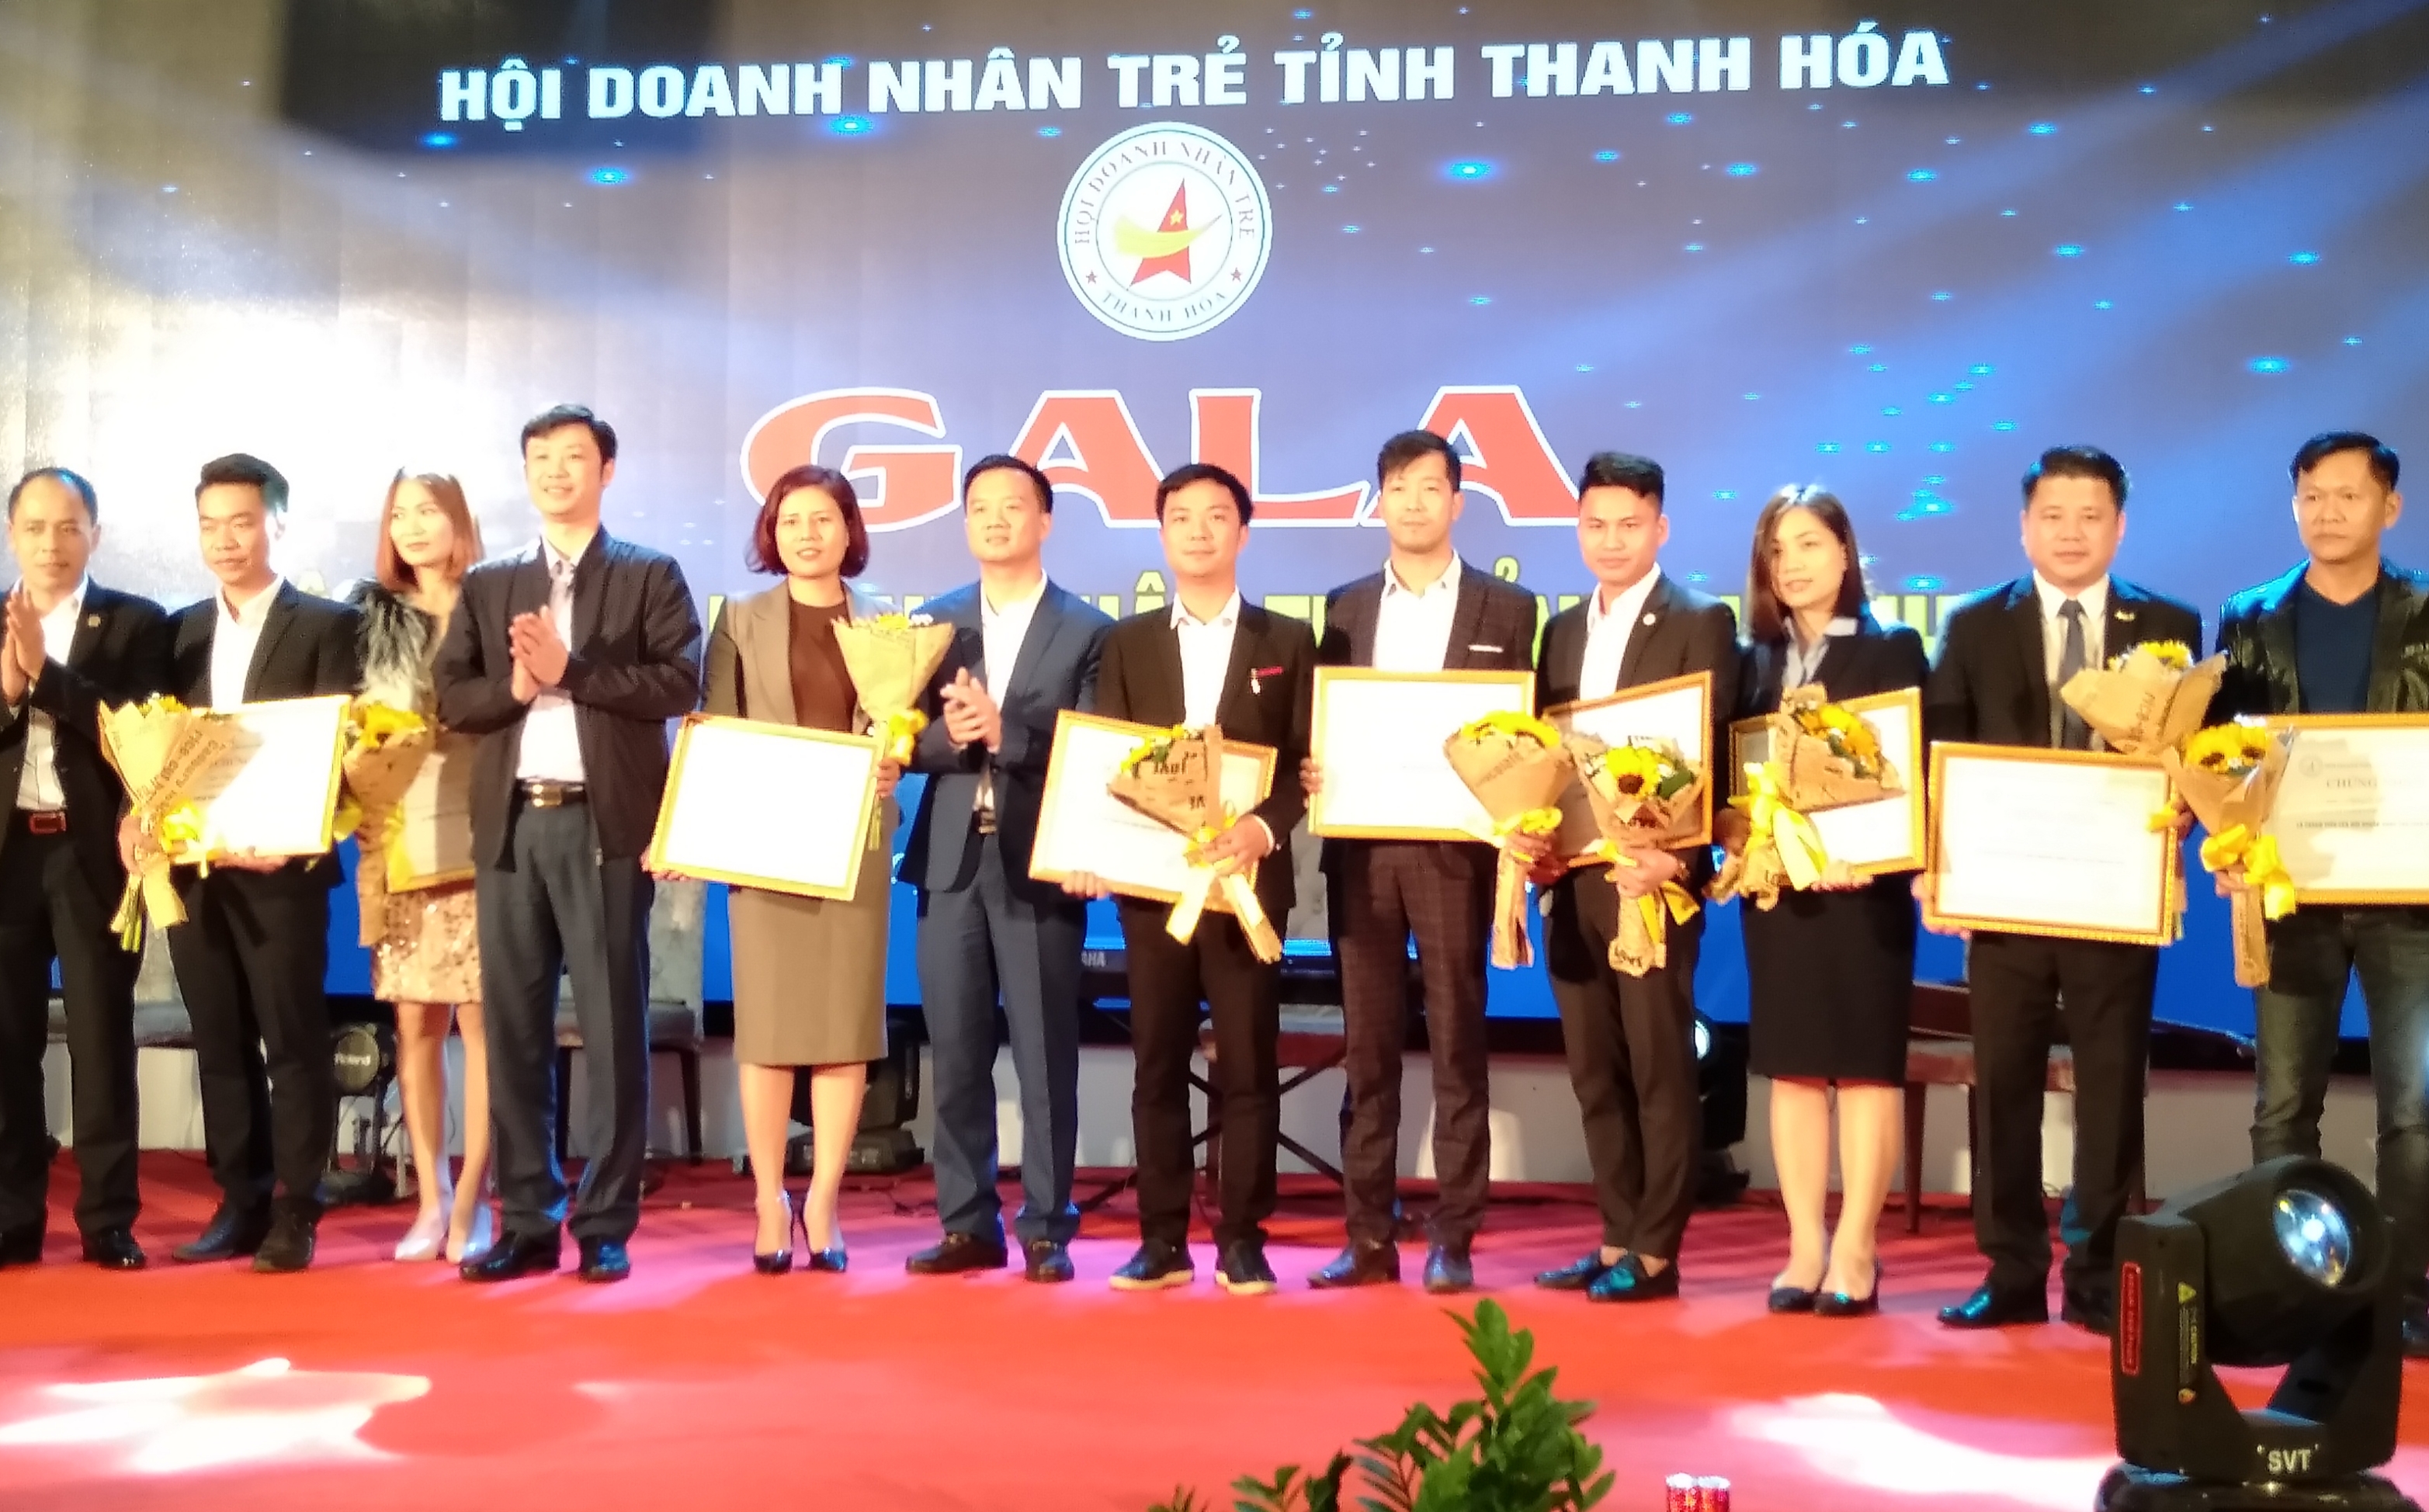 Đêm Gala hội tụ doanh nhân trẻ Thanh Hóa 2018